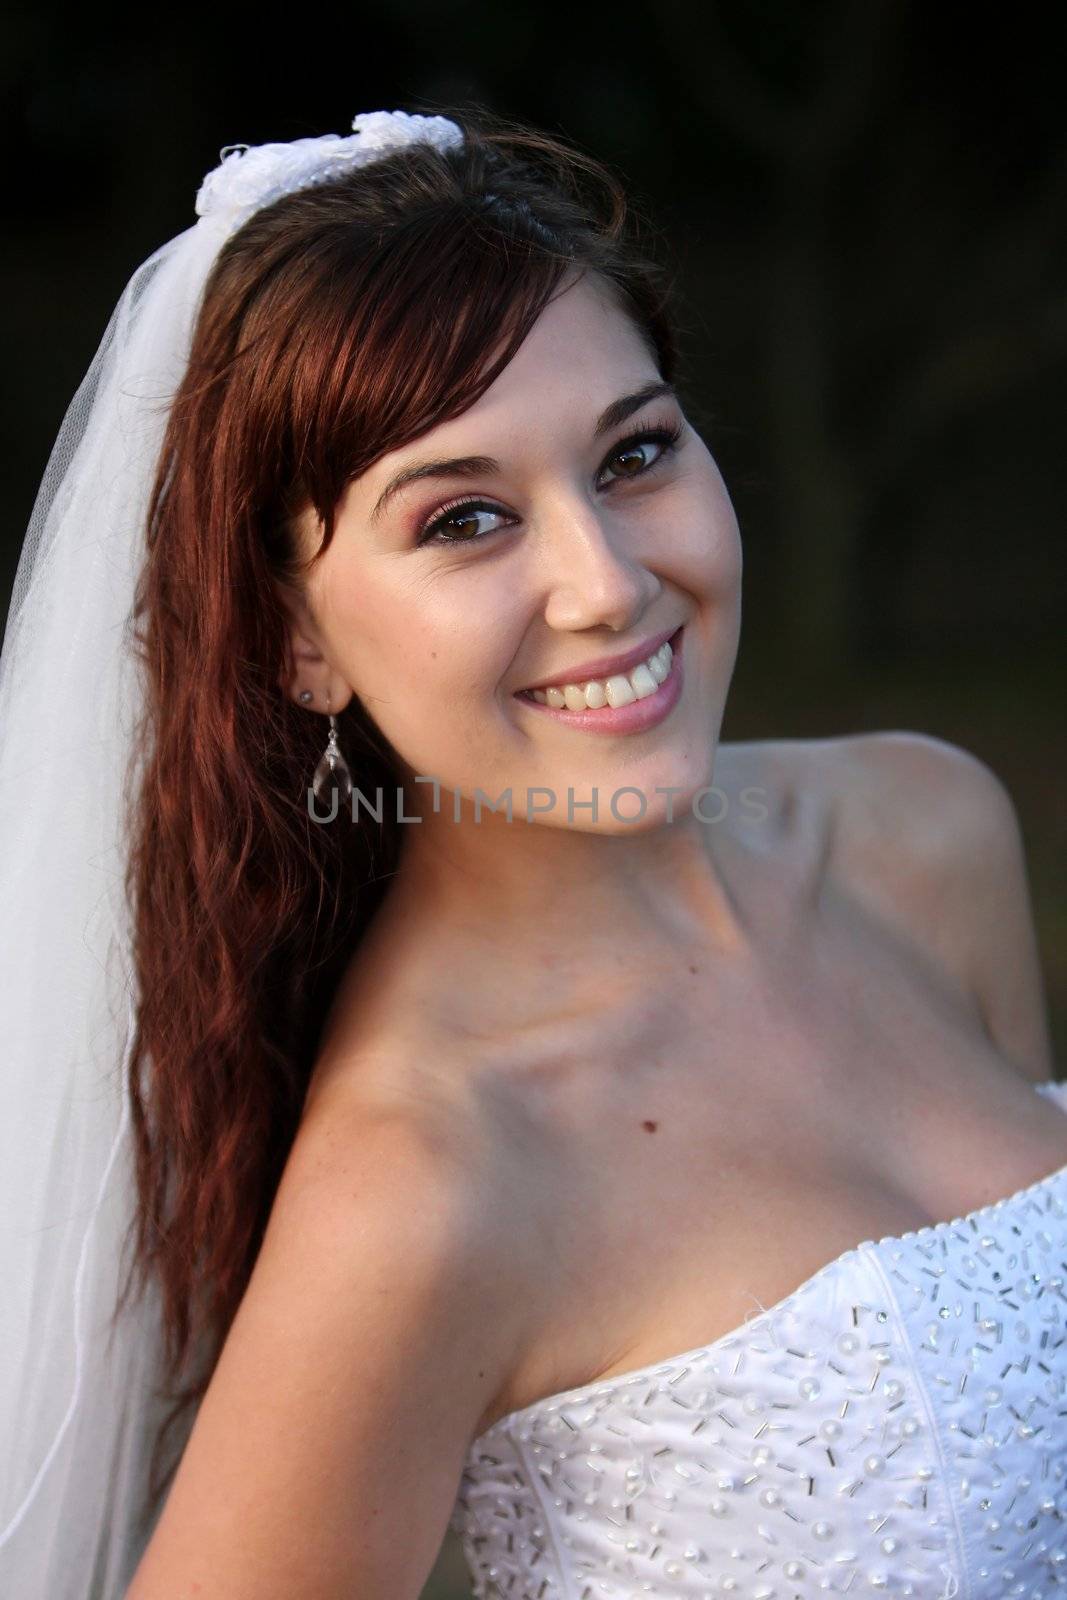 Gorgeous Smiling Bride by fouroaks